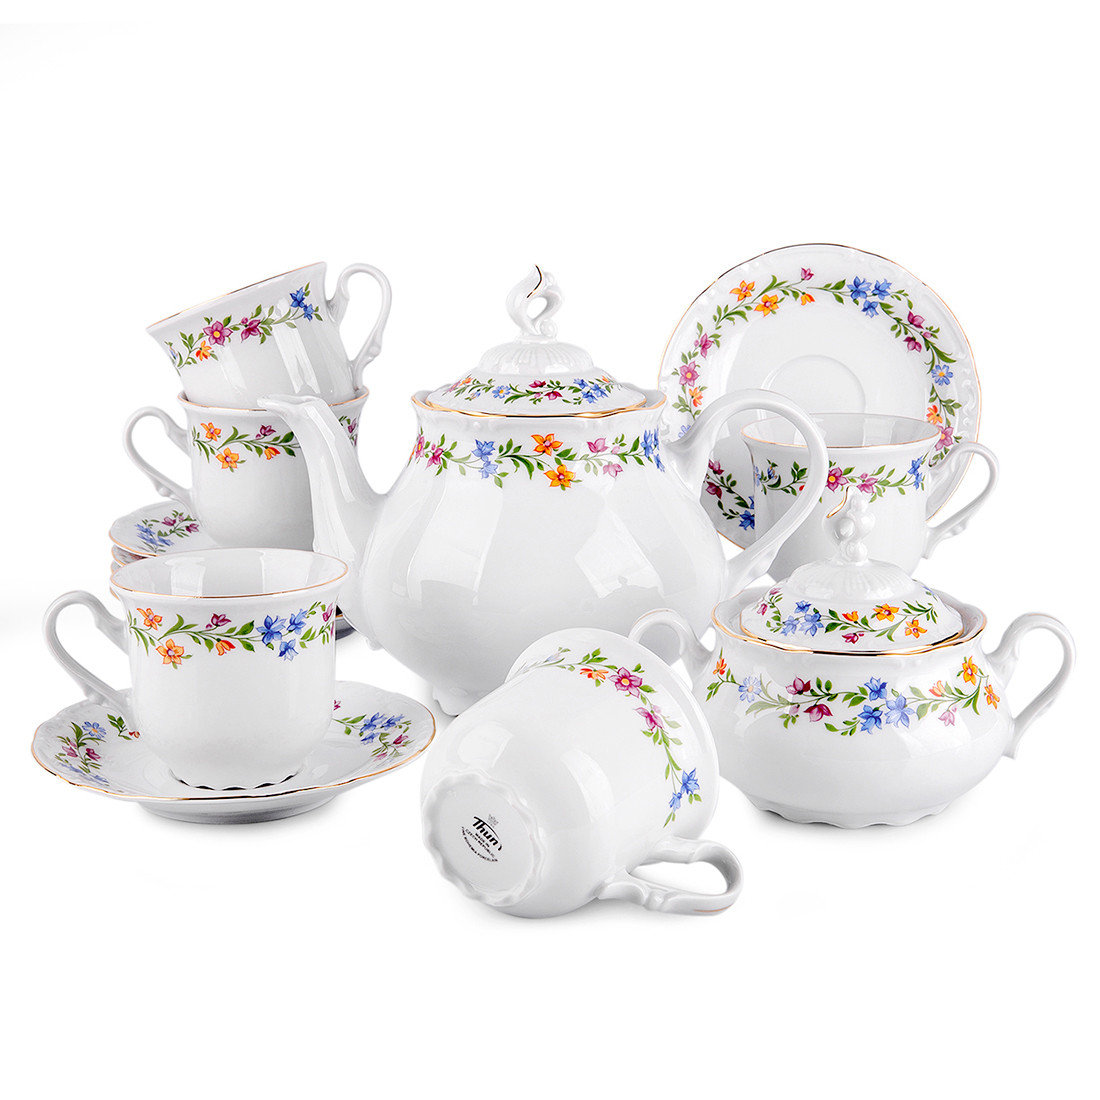 https://assets.wfcdn.com/im/61036215/compr-r85/2380/238033132/thun-1794-as-4058oz-floral-teapot-set.jpg